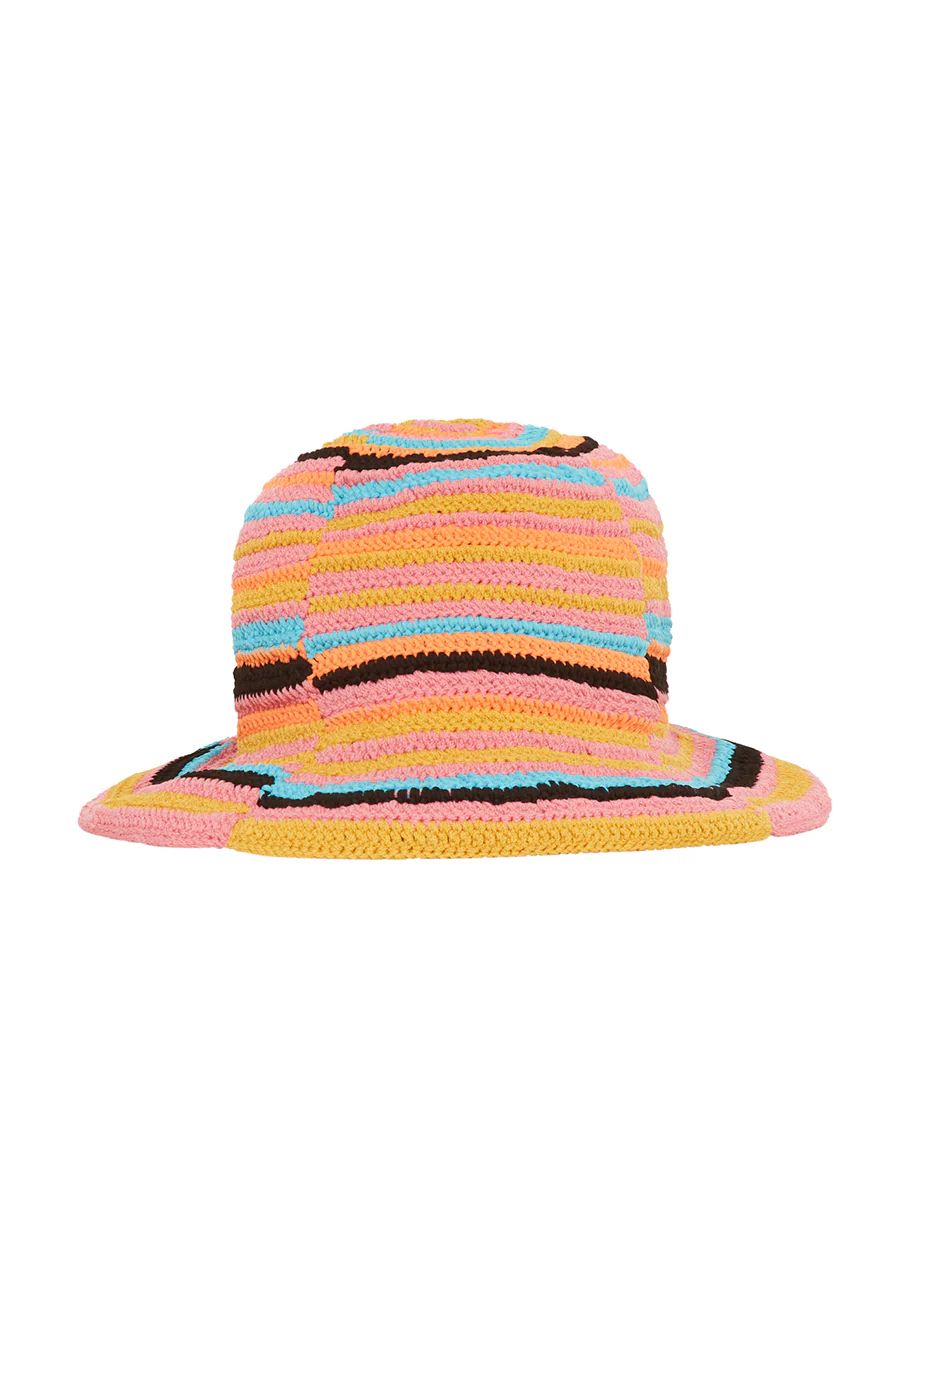 Alo YogaÅ½ | Alo x Tropic of C Crochet Bucket Hat in Sunset Stripe | Alo Yoga